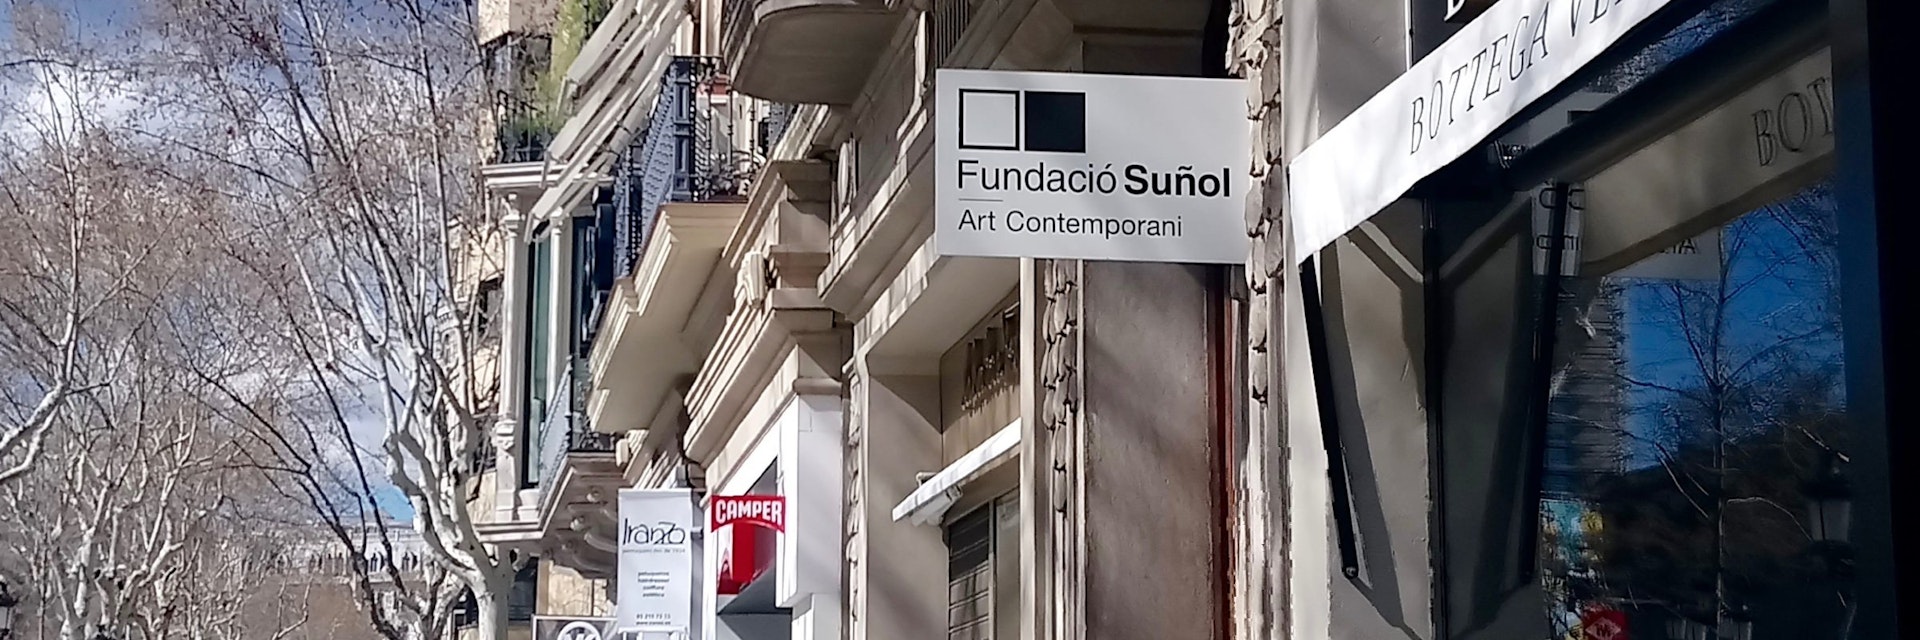 Exterior of Fundació Suñol